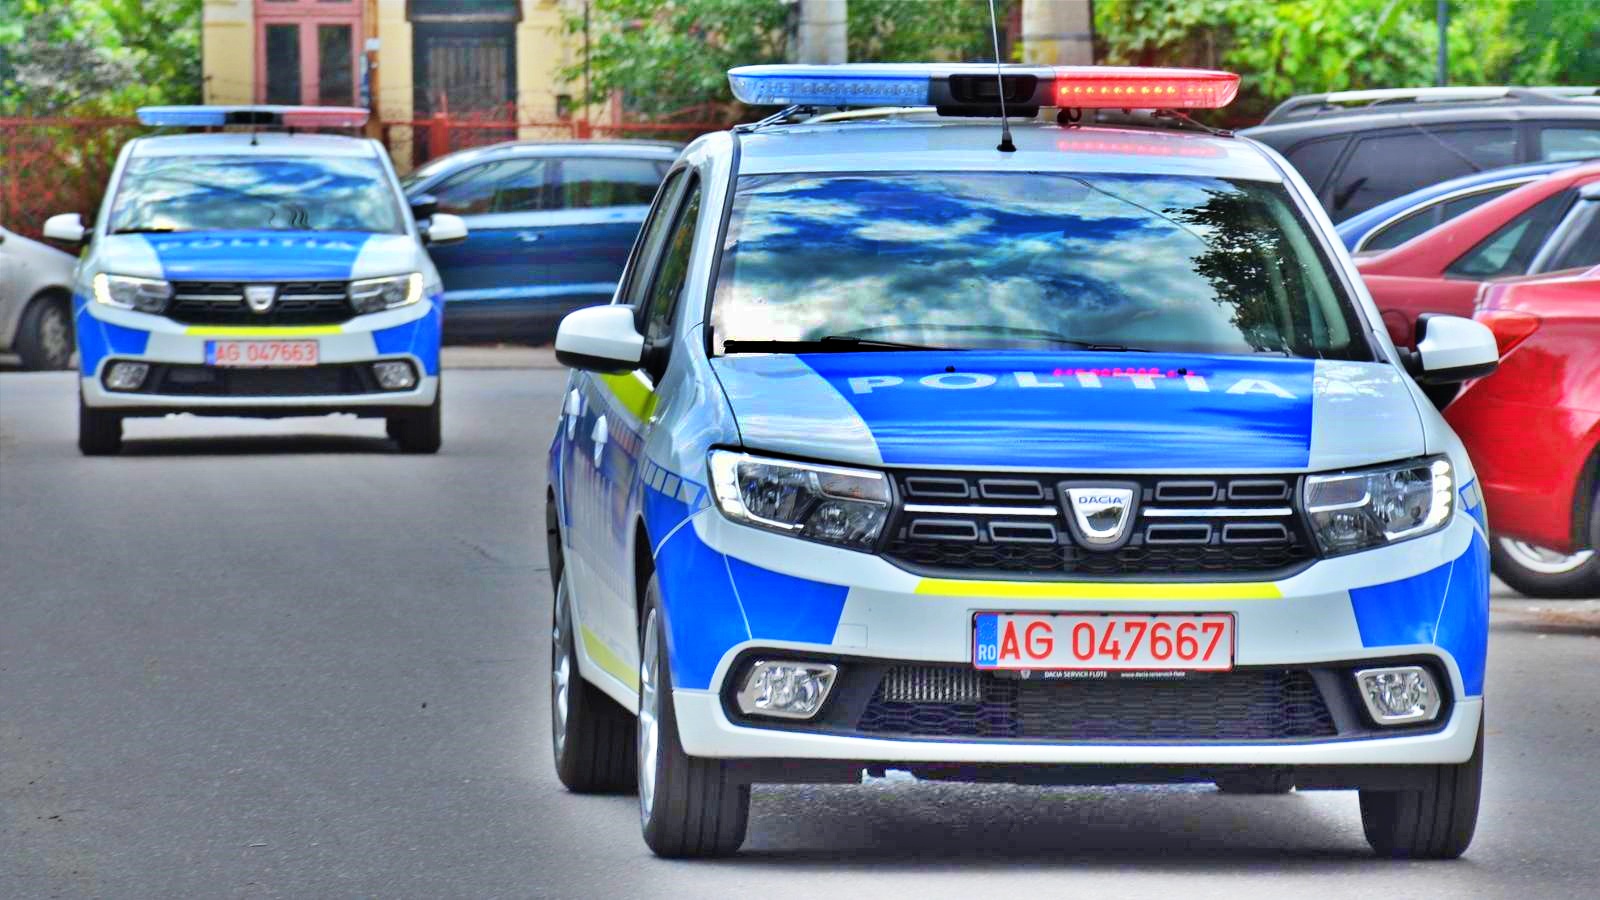 De Roemeense politie waarschuwt automobilisten die door Roemenië rijden